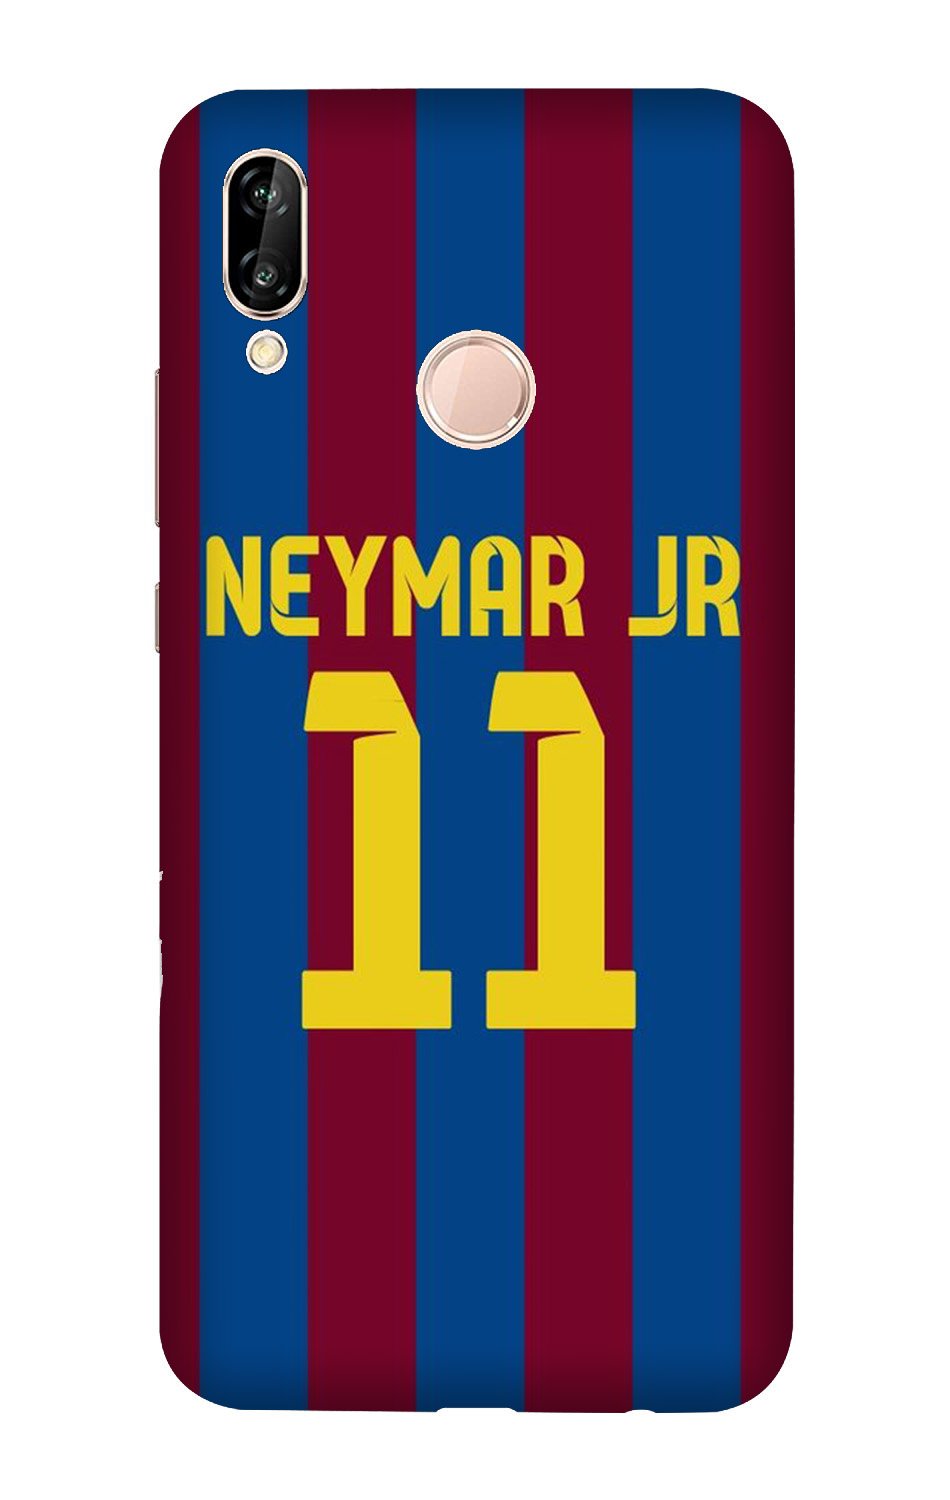 Neymar Jr Case for Honor 10 lite(Design - 162)